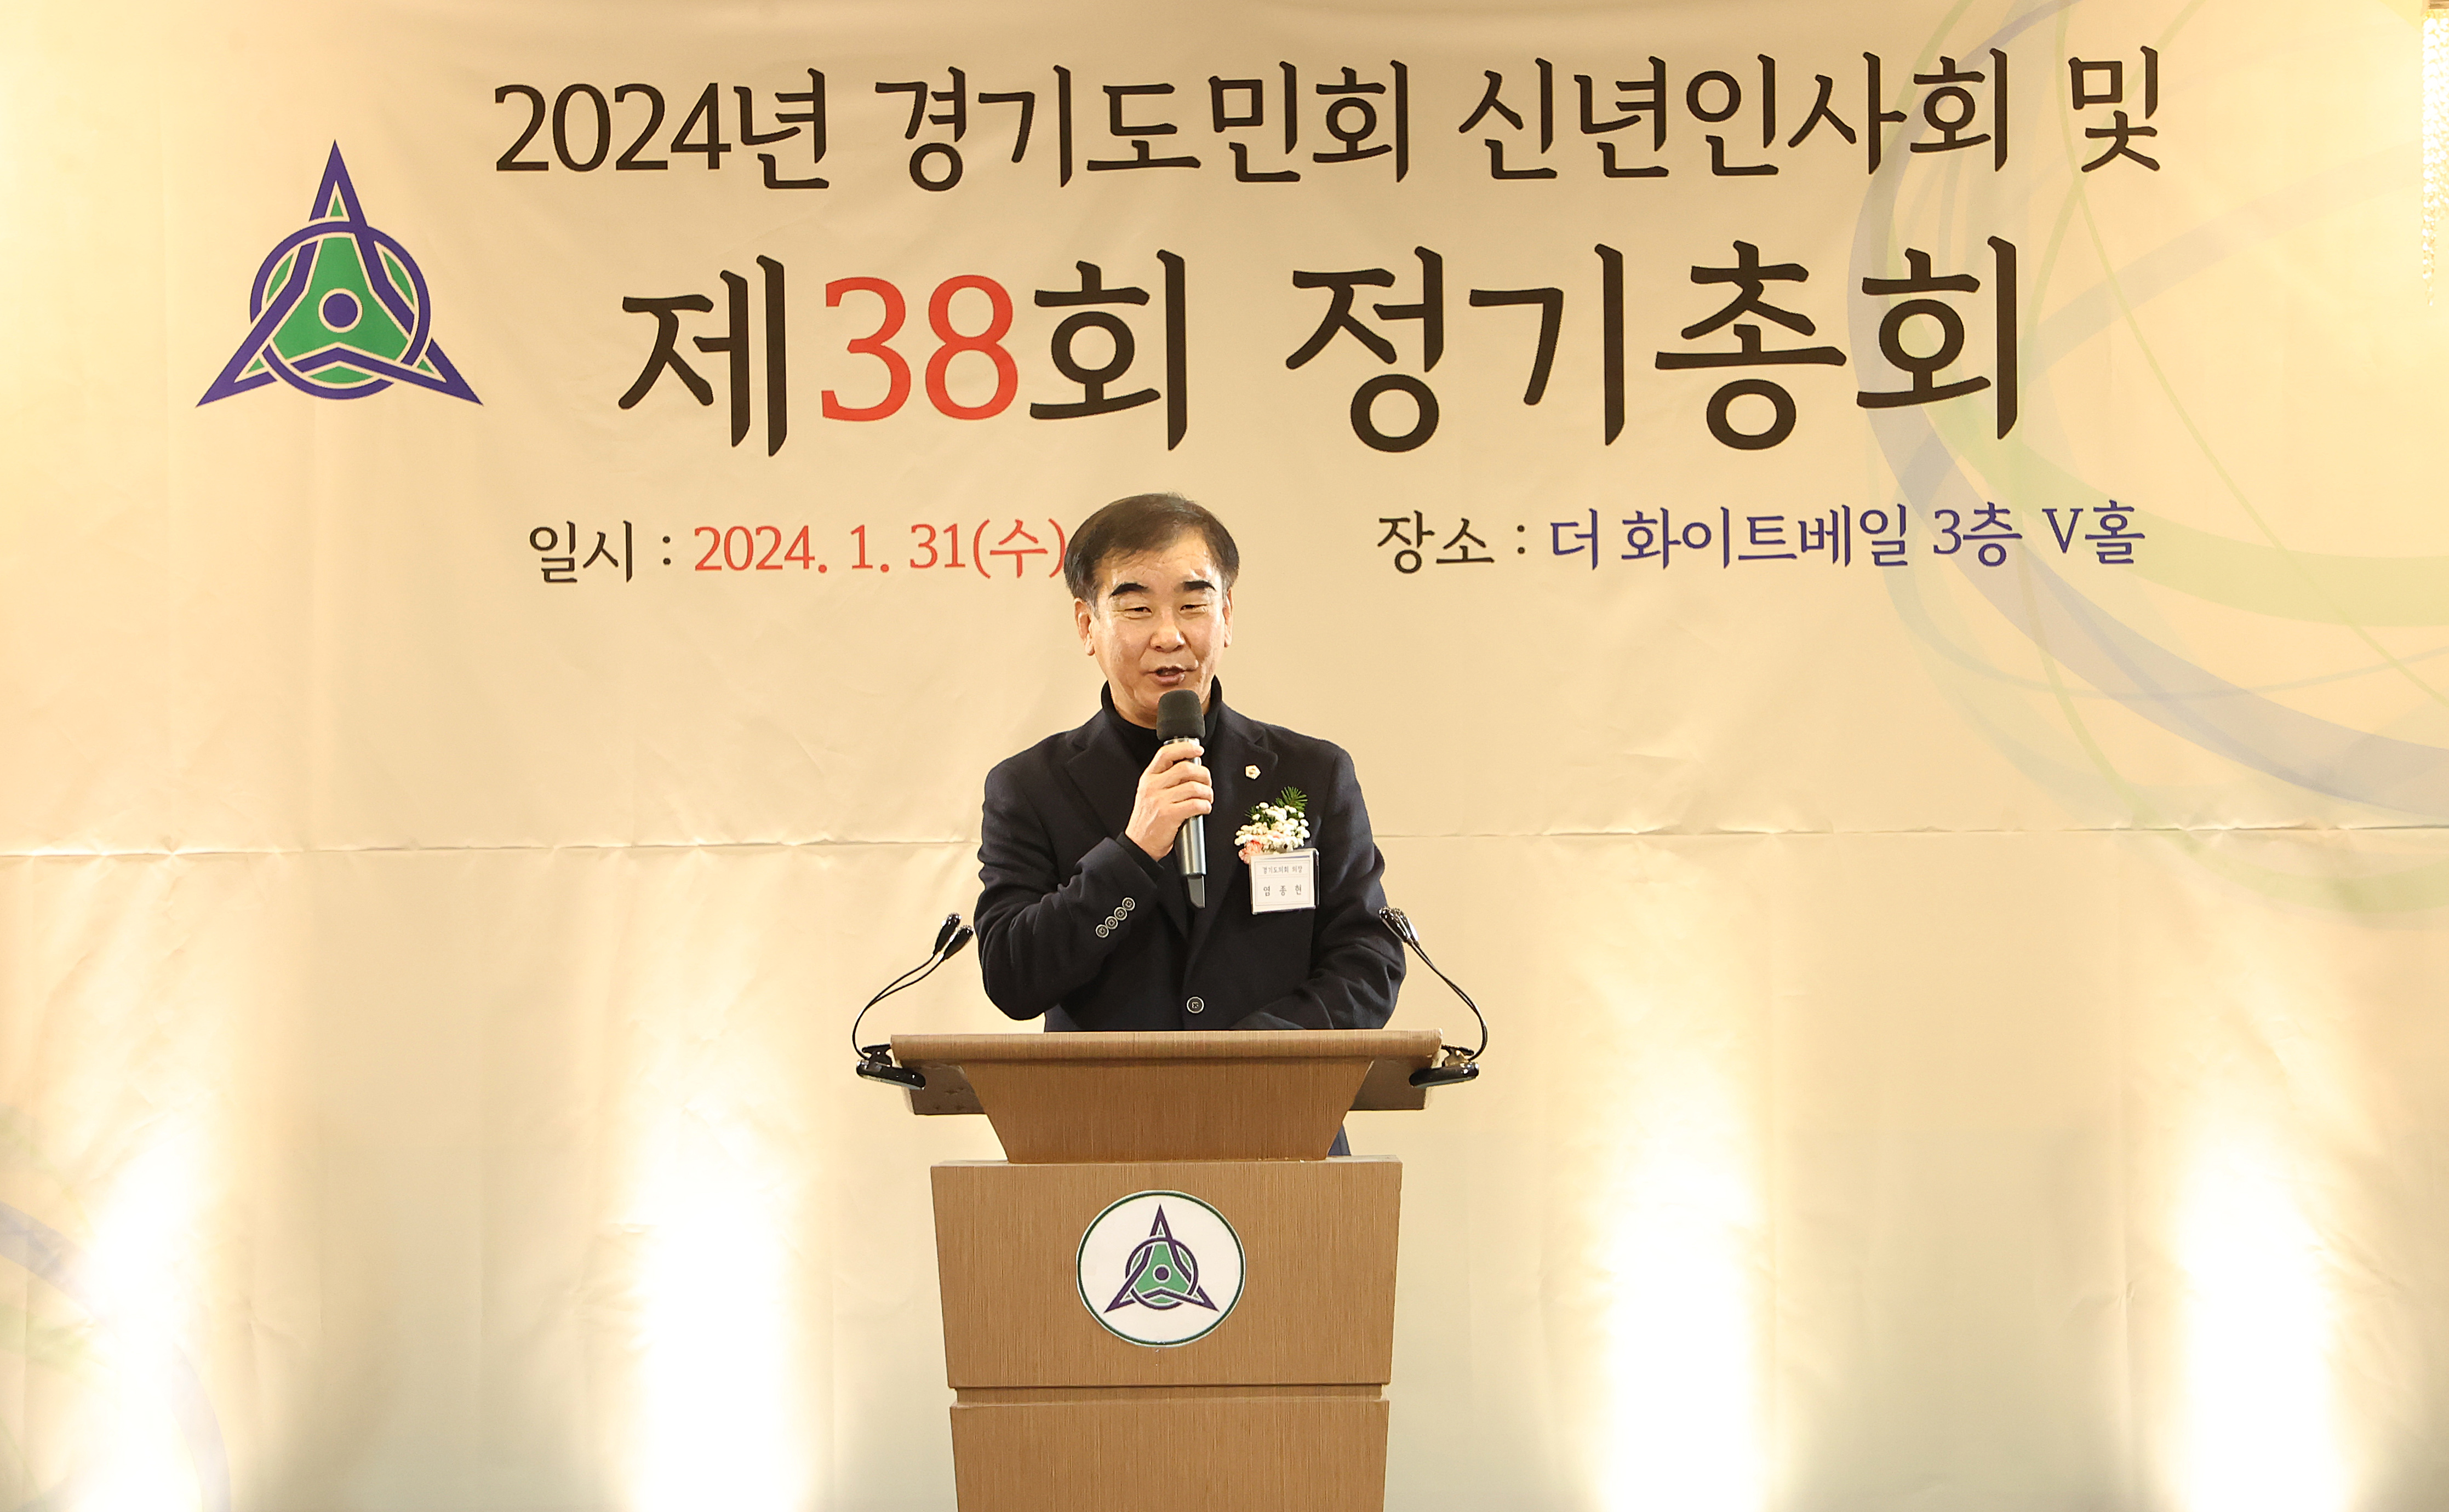 염종현 의장, 경기도민회 신년 인사회서 '통합의 중요성' 역설